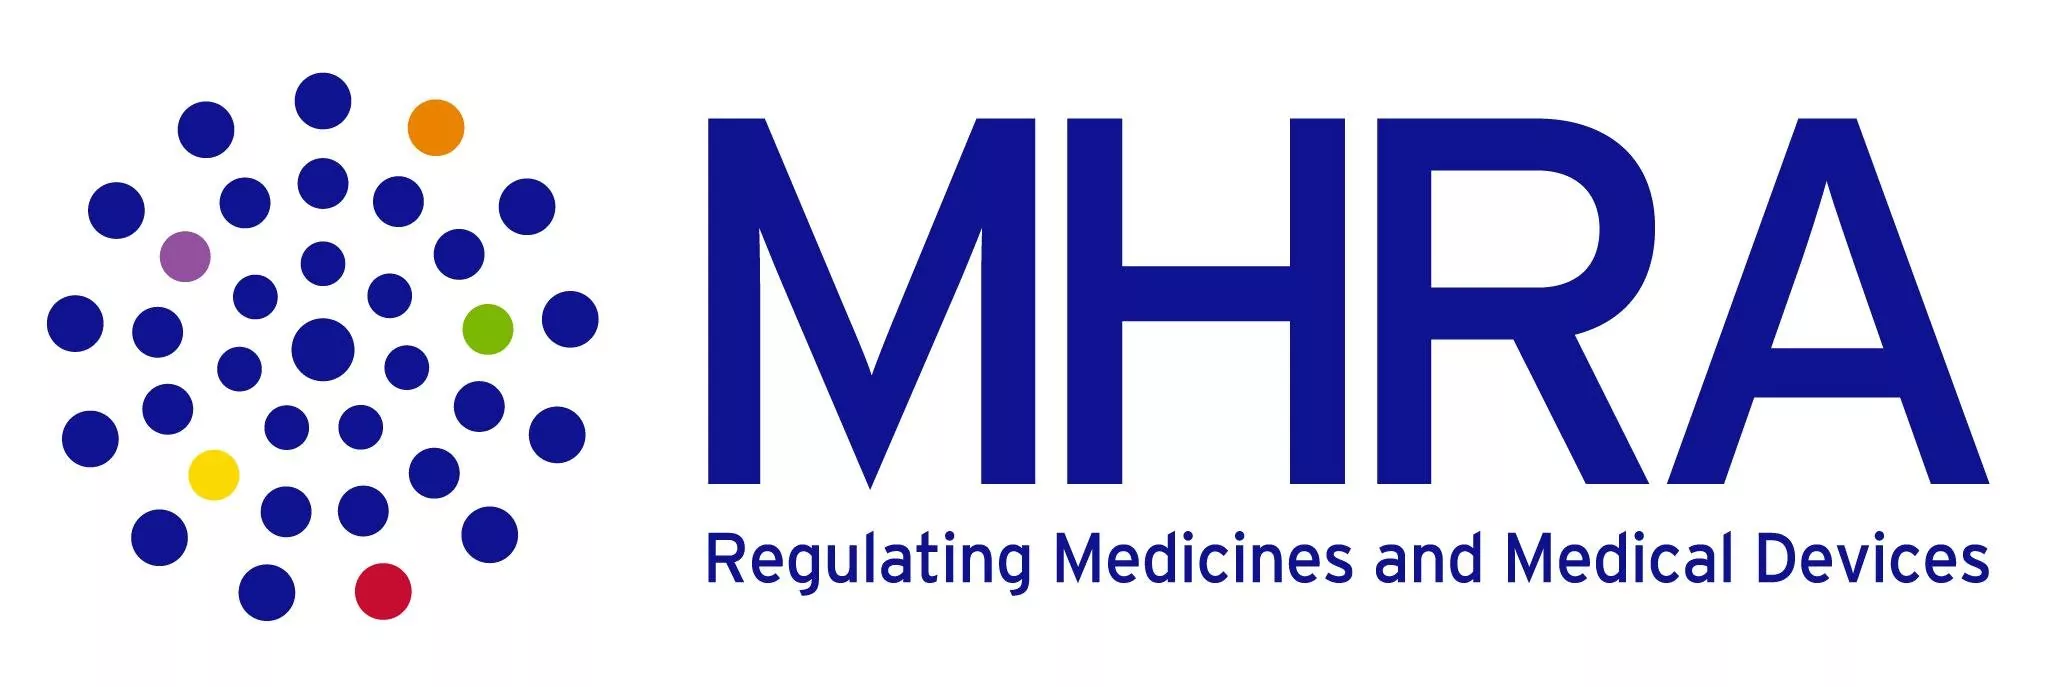 regulating medicines nad medical devices